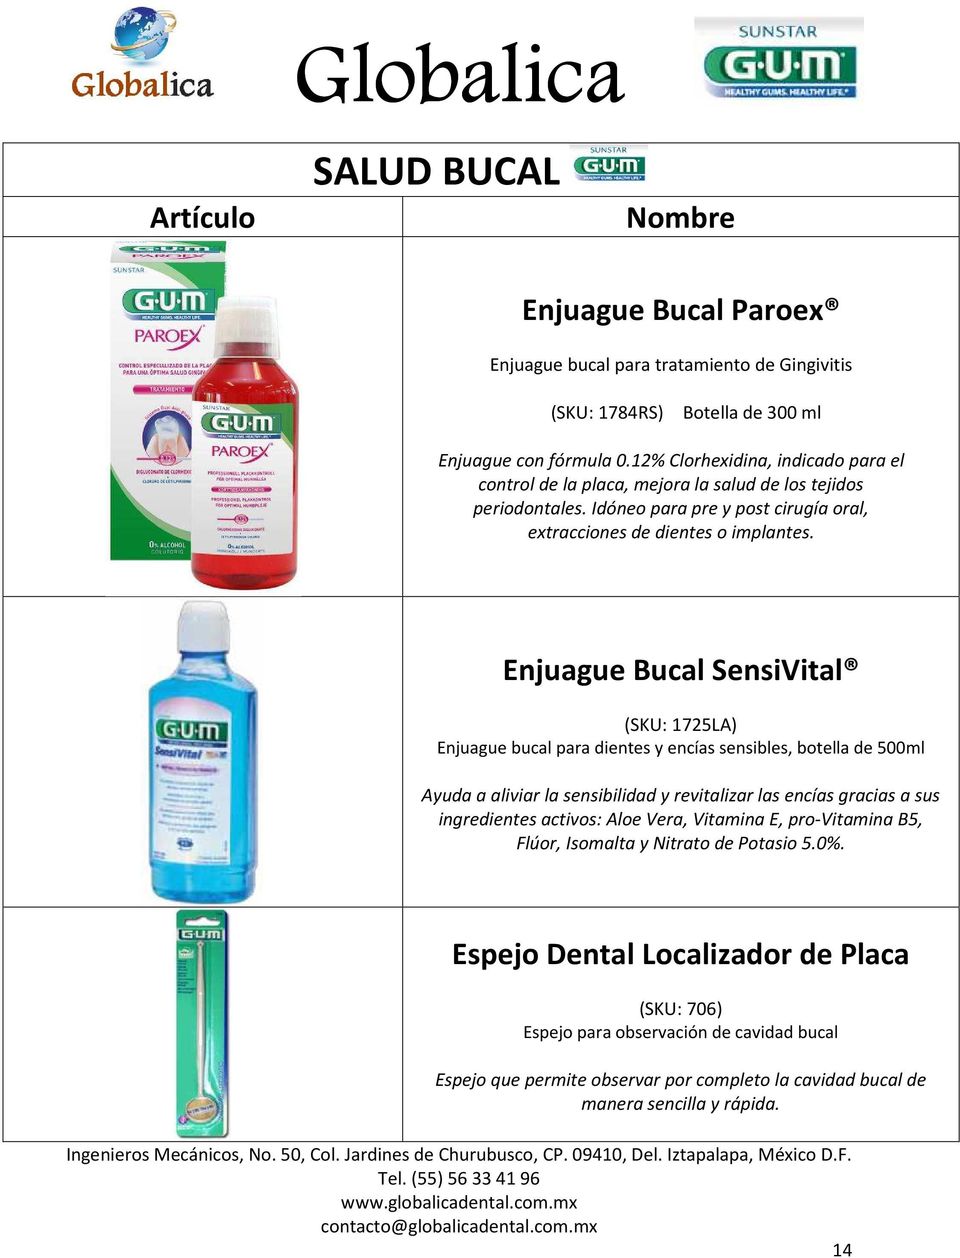 Enjuague Bucal SensiVital (SKU: 1725LA) Enjuague bucal para dientes y encías sensibles, botella de 500ml Ayuda a aliviar la sensibilidad y revitalizar las encías gracias a sus ingredientes